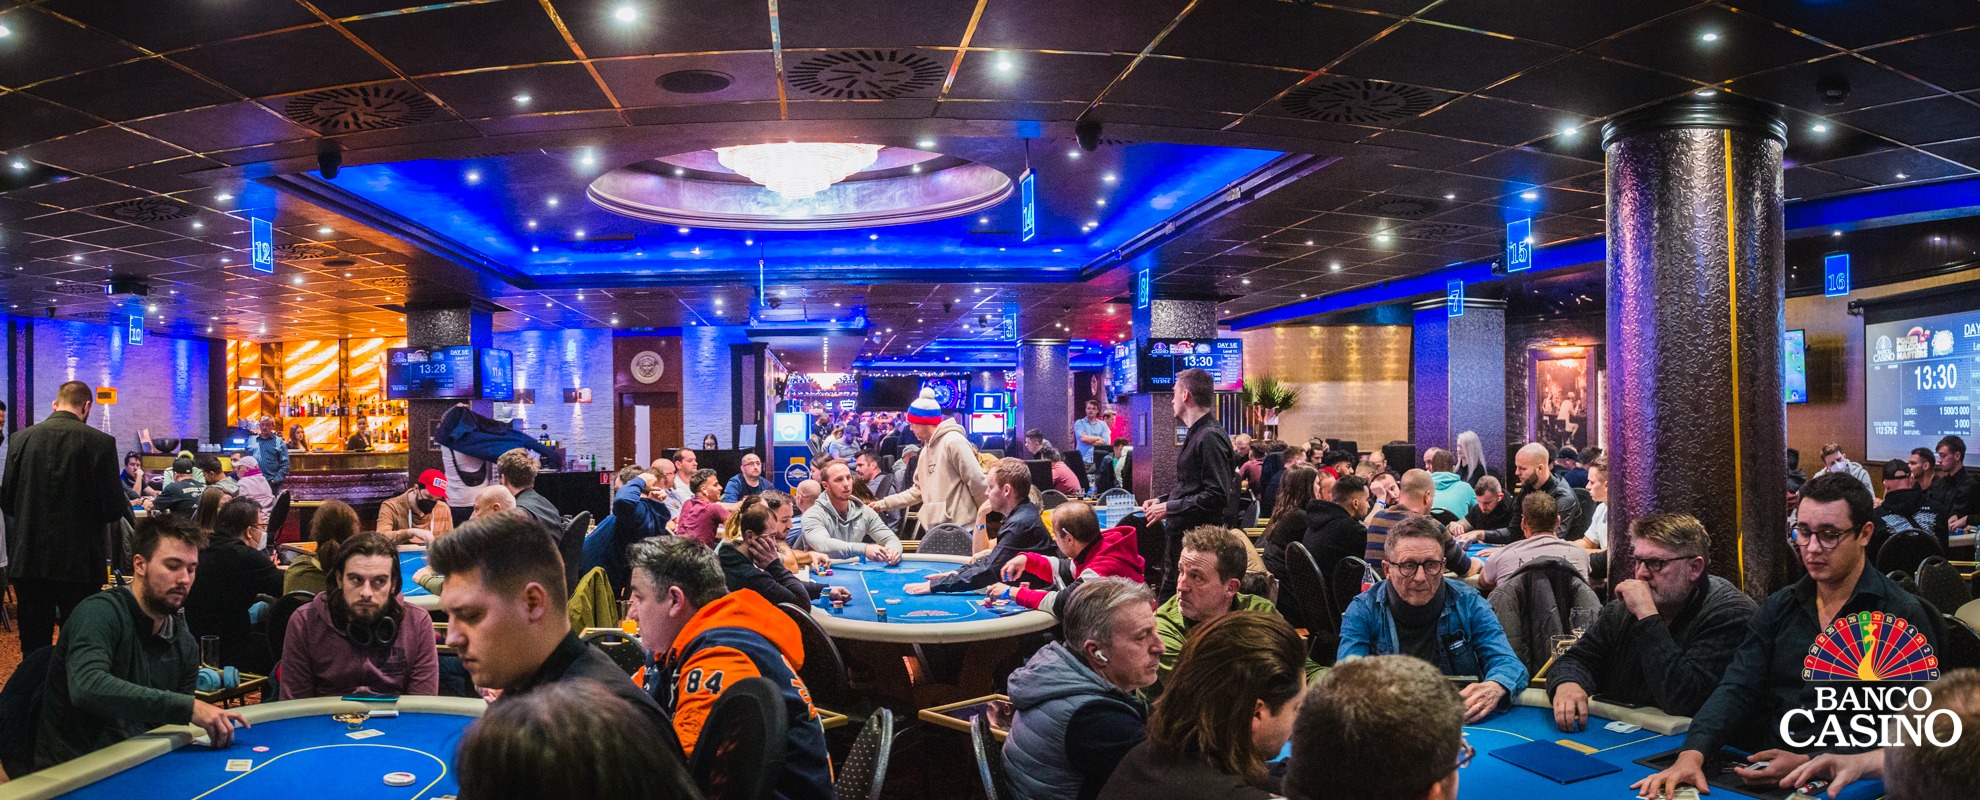 Masívna účasť v Banco Casino rozdrvila garanciu Main Eventu Poker Belgique Masters!